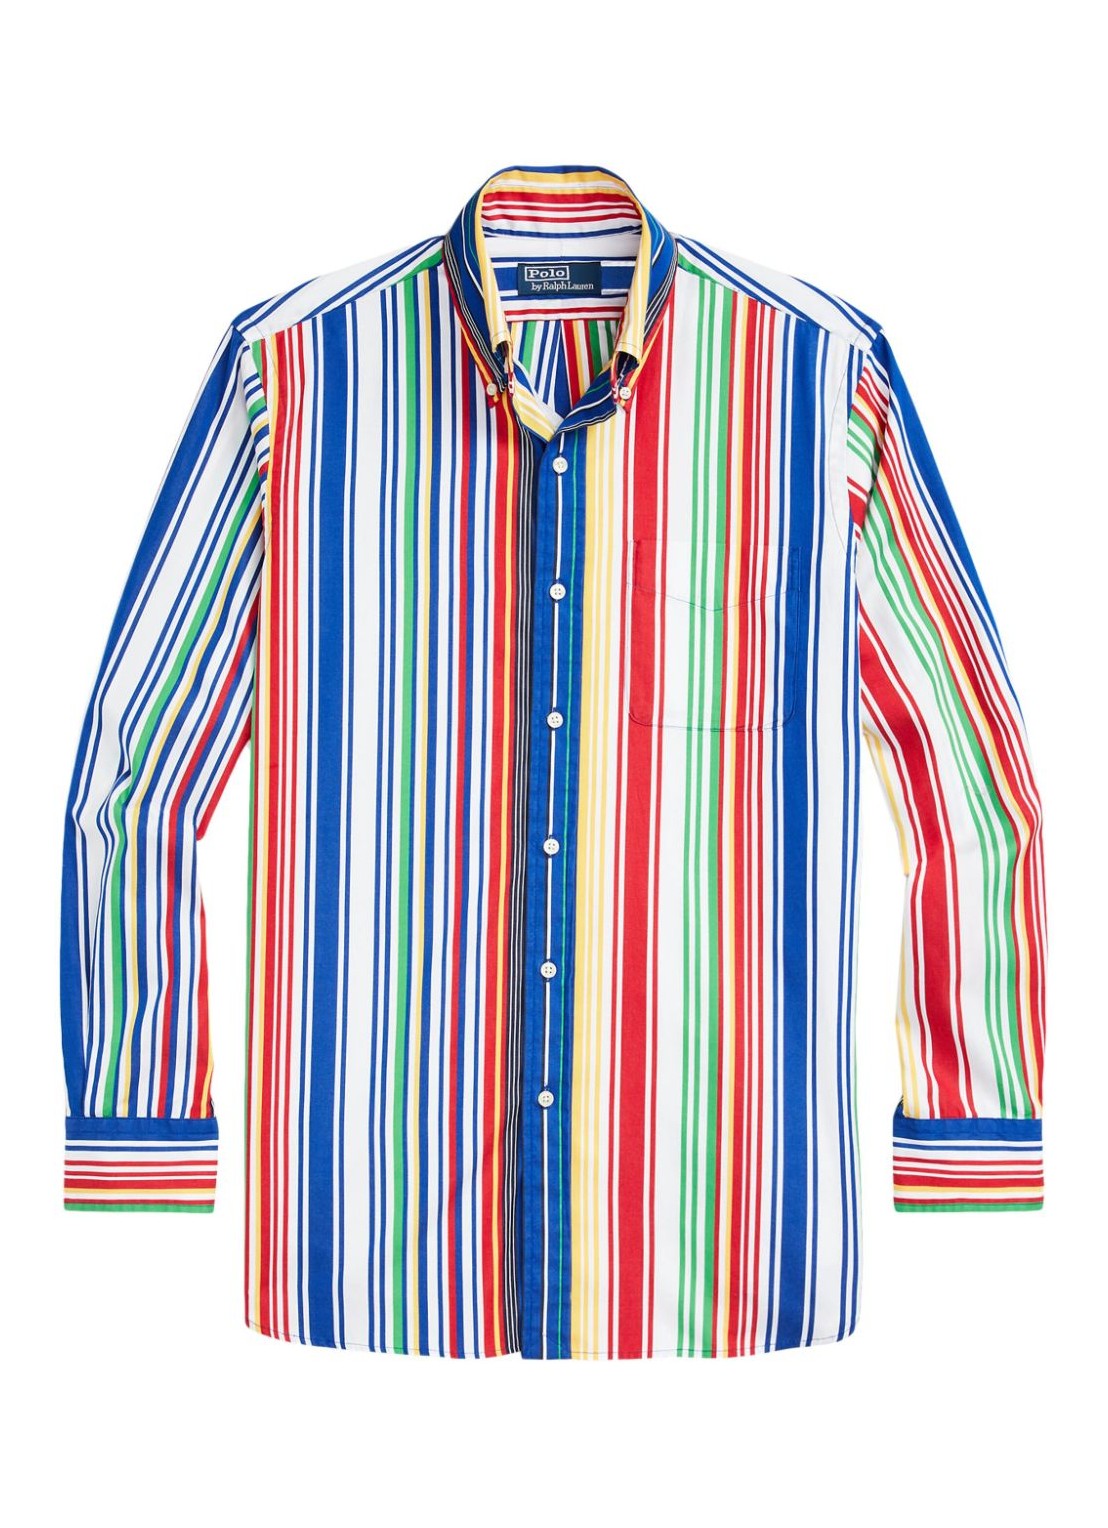 Camiseria polo ralph lauren shirt man clhbdpkpph-long sleeve-sport shirt 710925314001 6248 blue red 